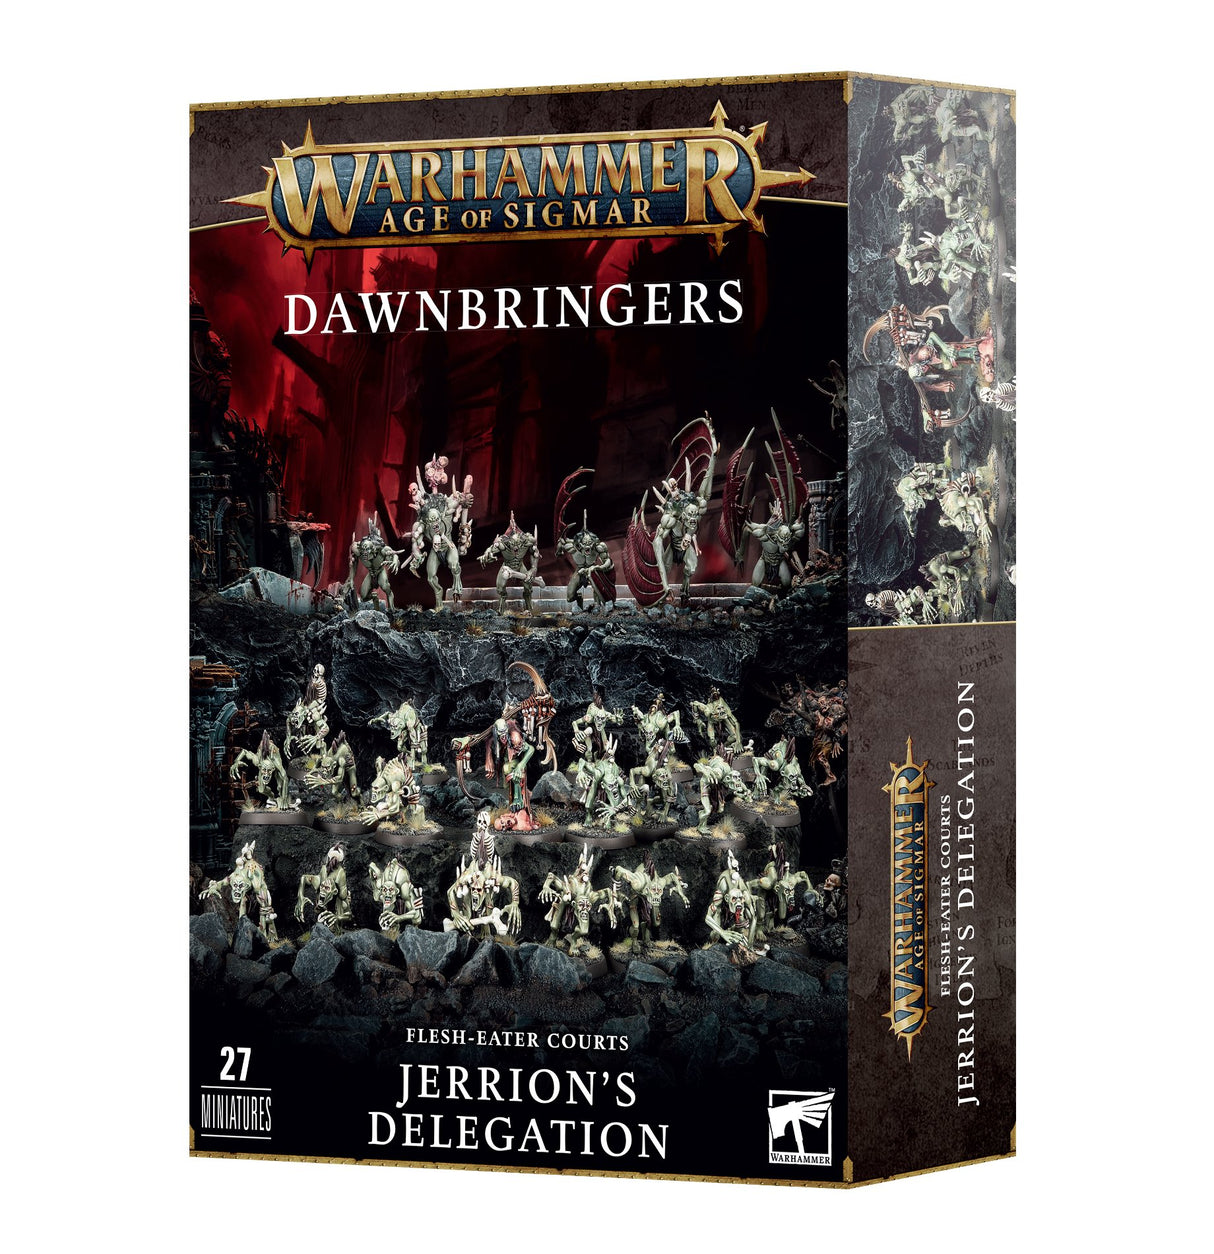 Warhammer Age of Sigmar: Dawnbringers: Flesh-eater Courts – Jerrion's Delegation